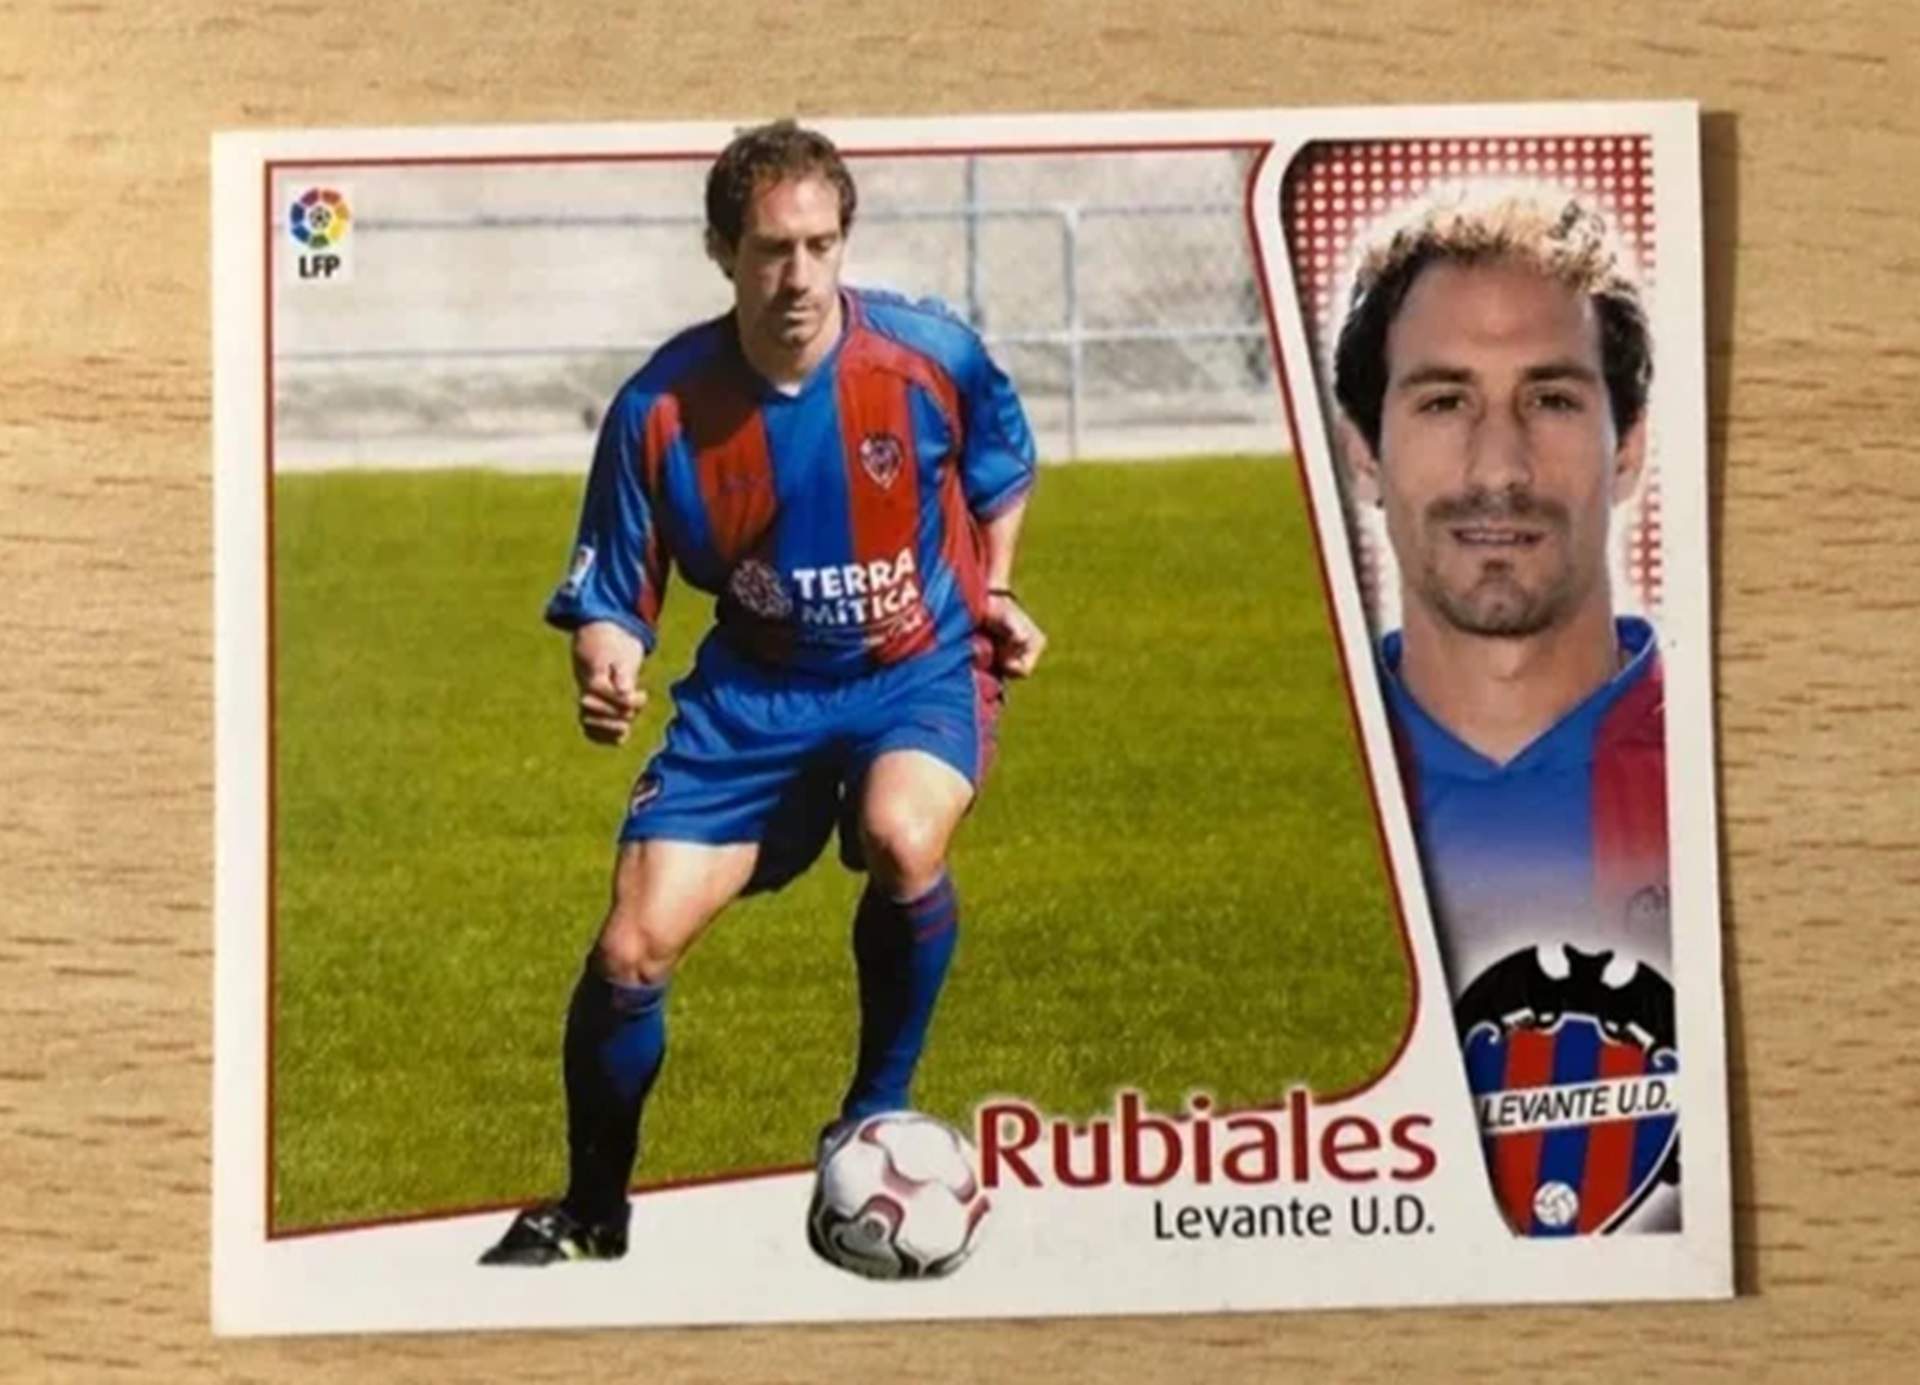 El negocio tras el escándalo de Rubiales: cromos de futbolista y con pelo por más de 1.000 euros